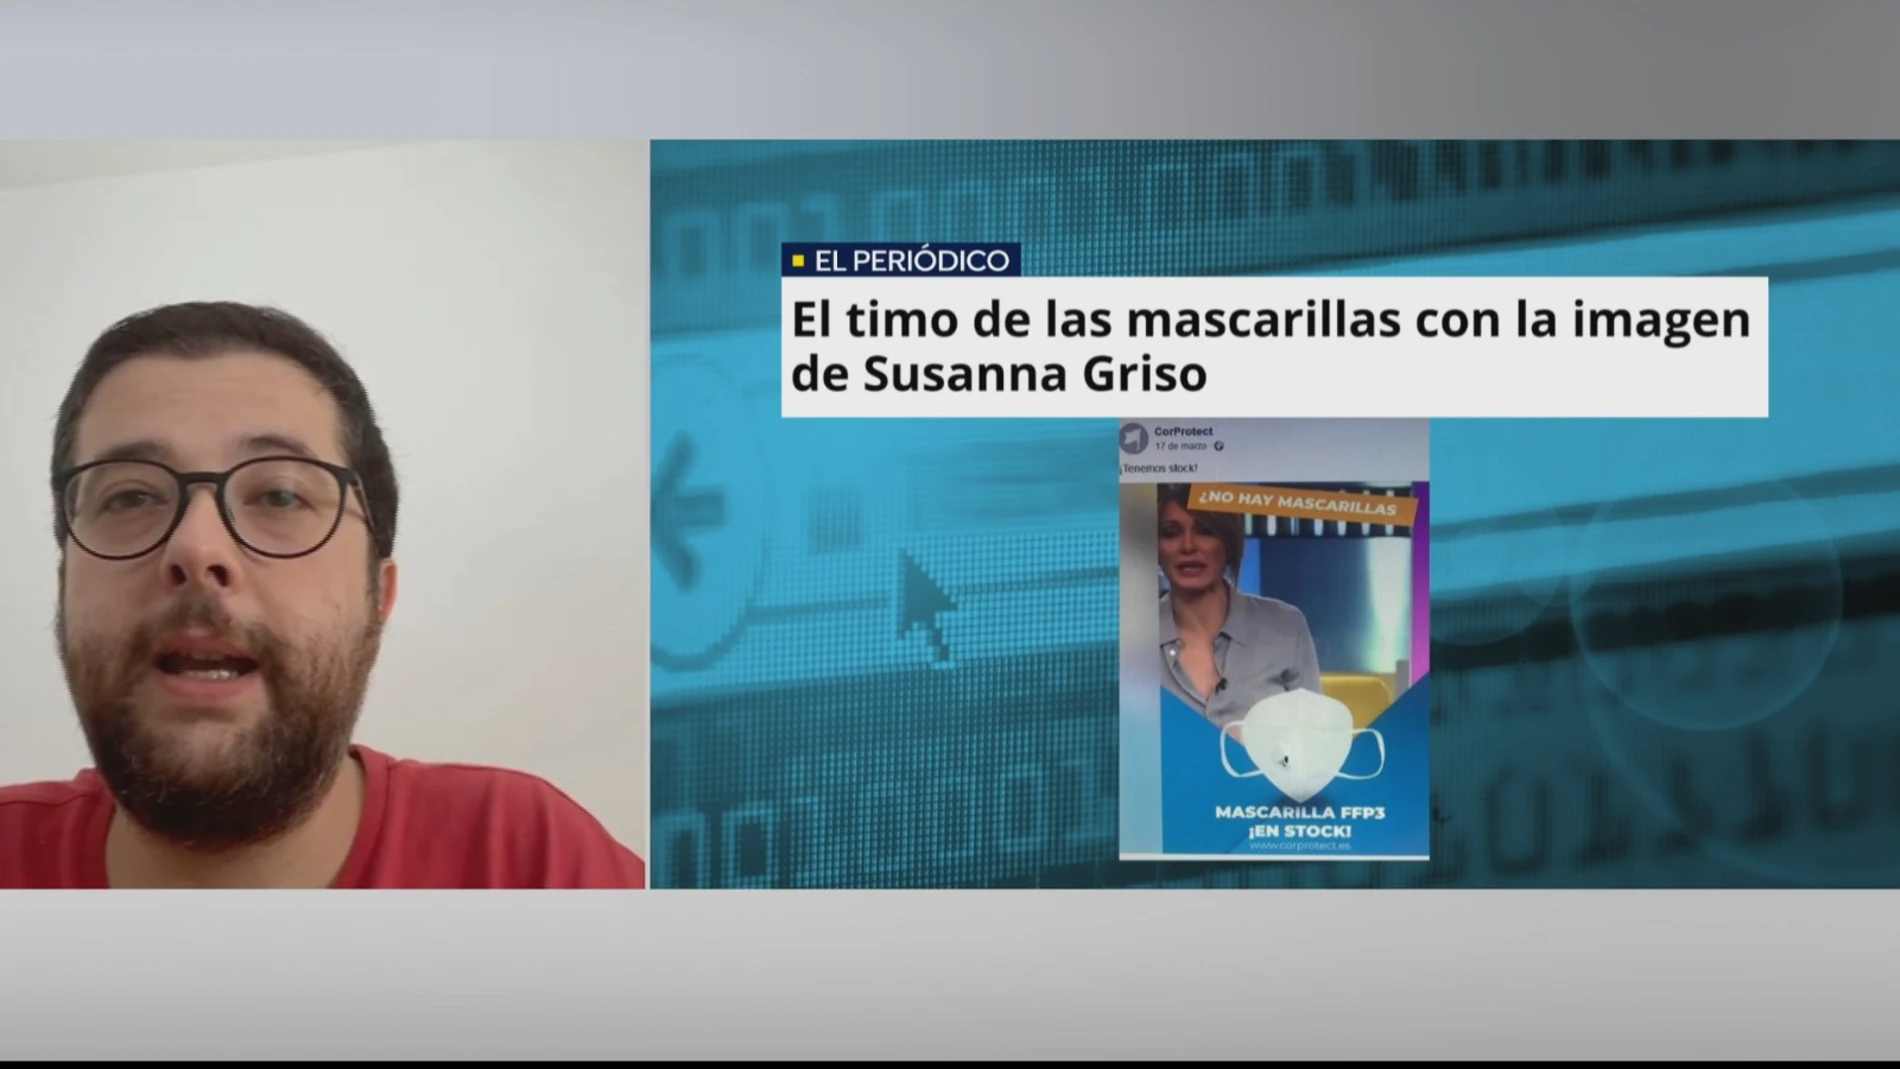 Una víctima de la estafa de mascarillas con la imagen de Susanna Griso: "Me dio confianza la pasarela de pago segura"